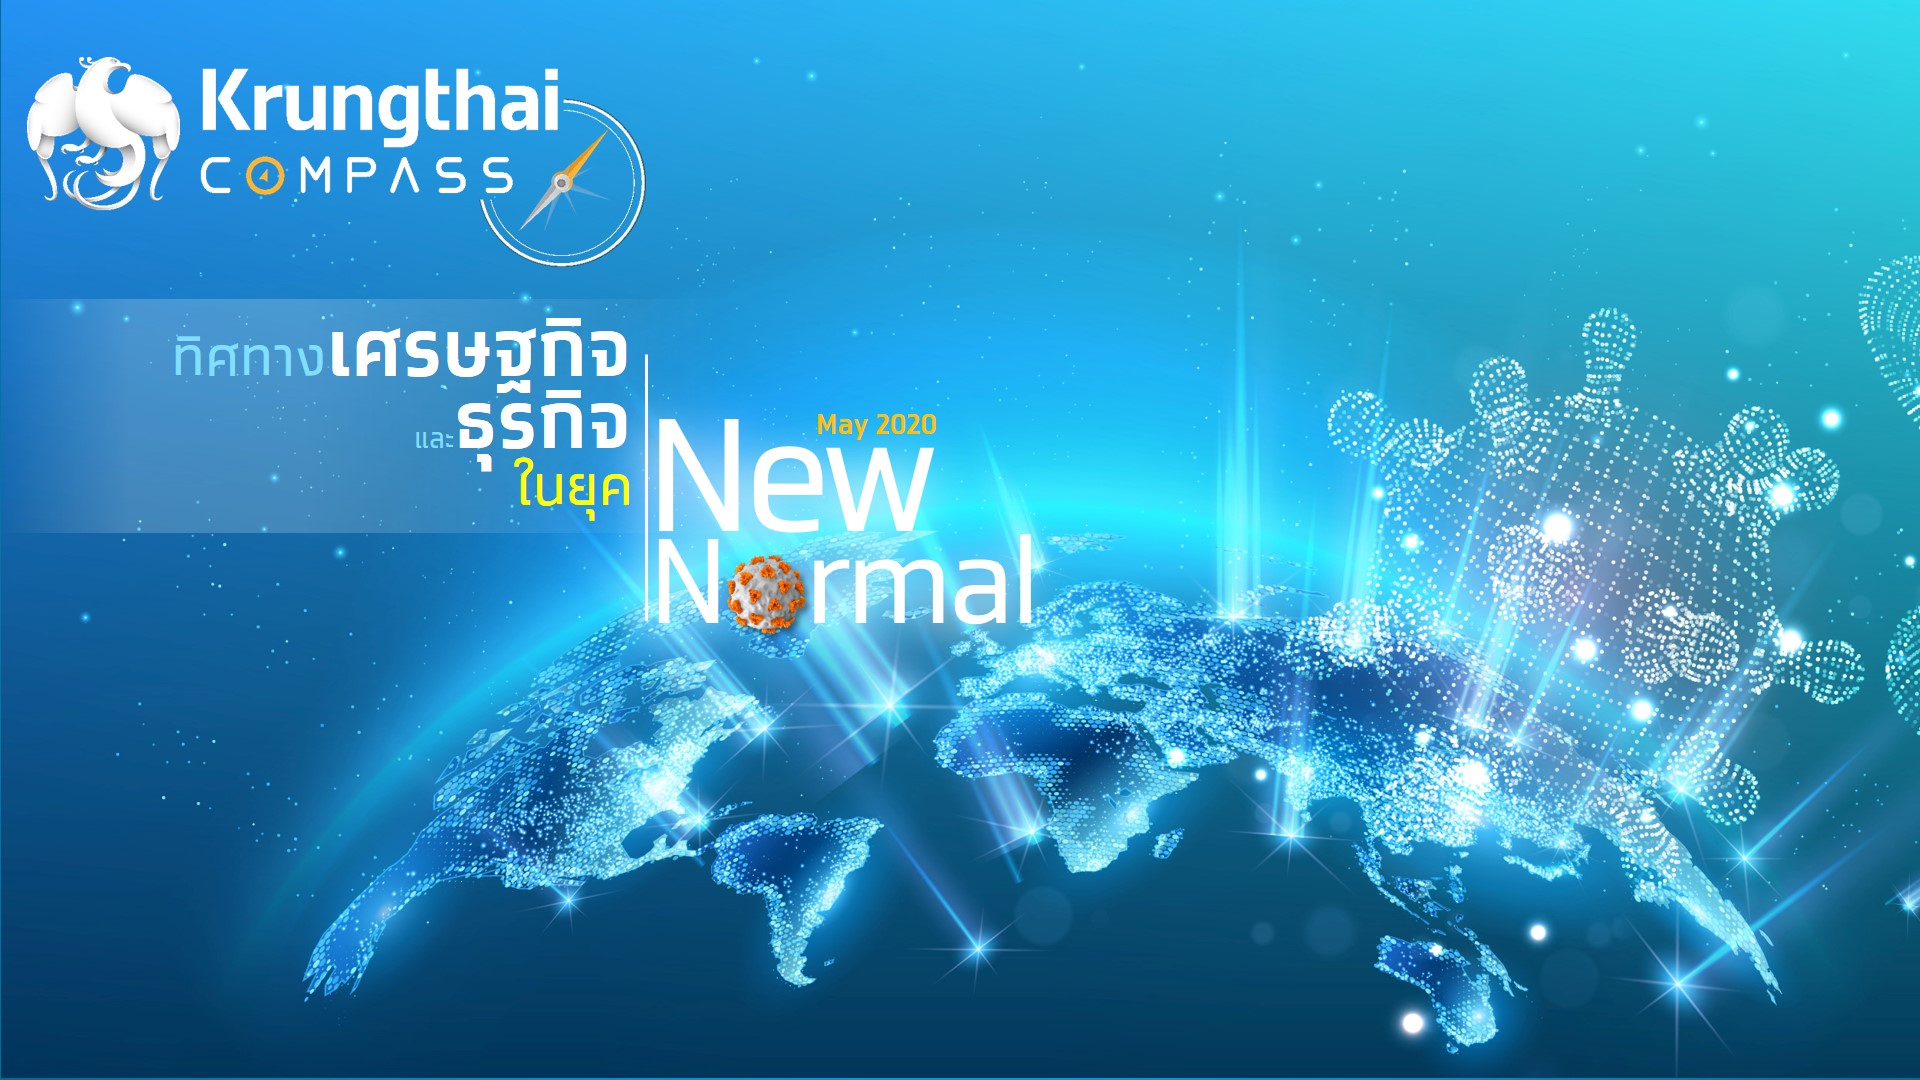 กรุงไทยแนะ 3 ตัวขับเคลื่อนเศรษฐกิจไทยในยุค New Normal